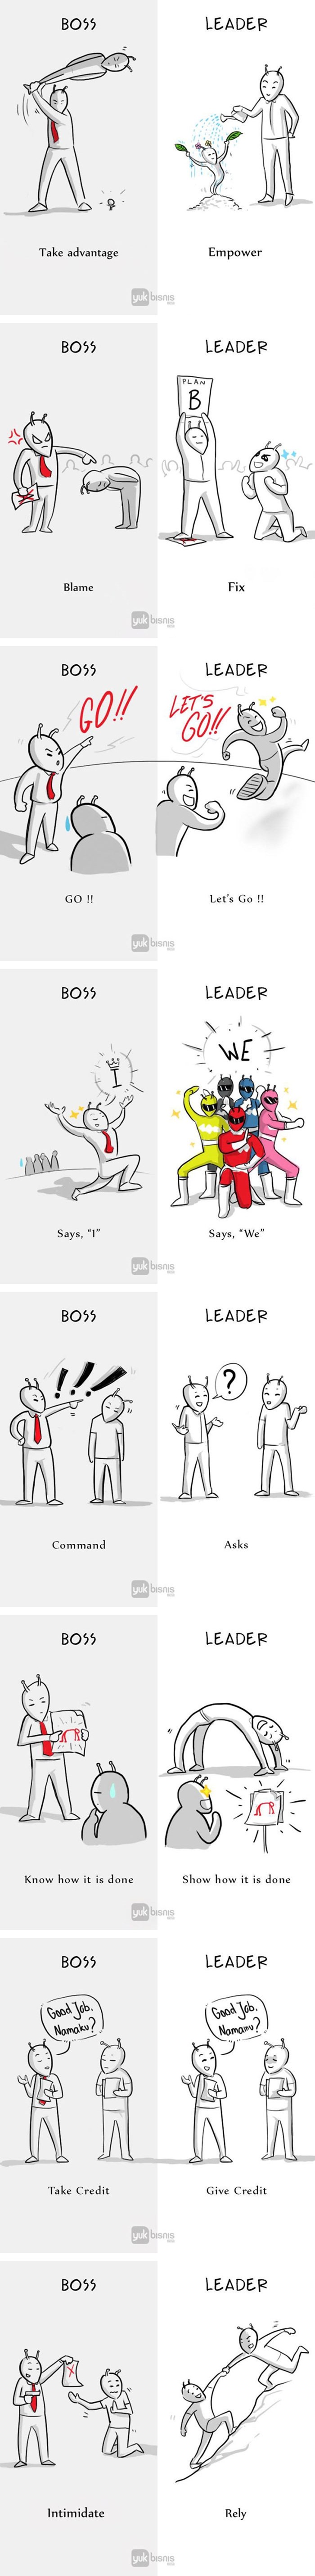 Velika je razlika između šefa i vođe, a ove ilustracije to dokazuju na najbolji način